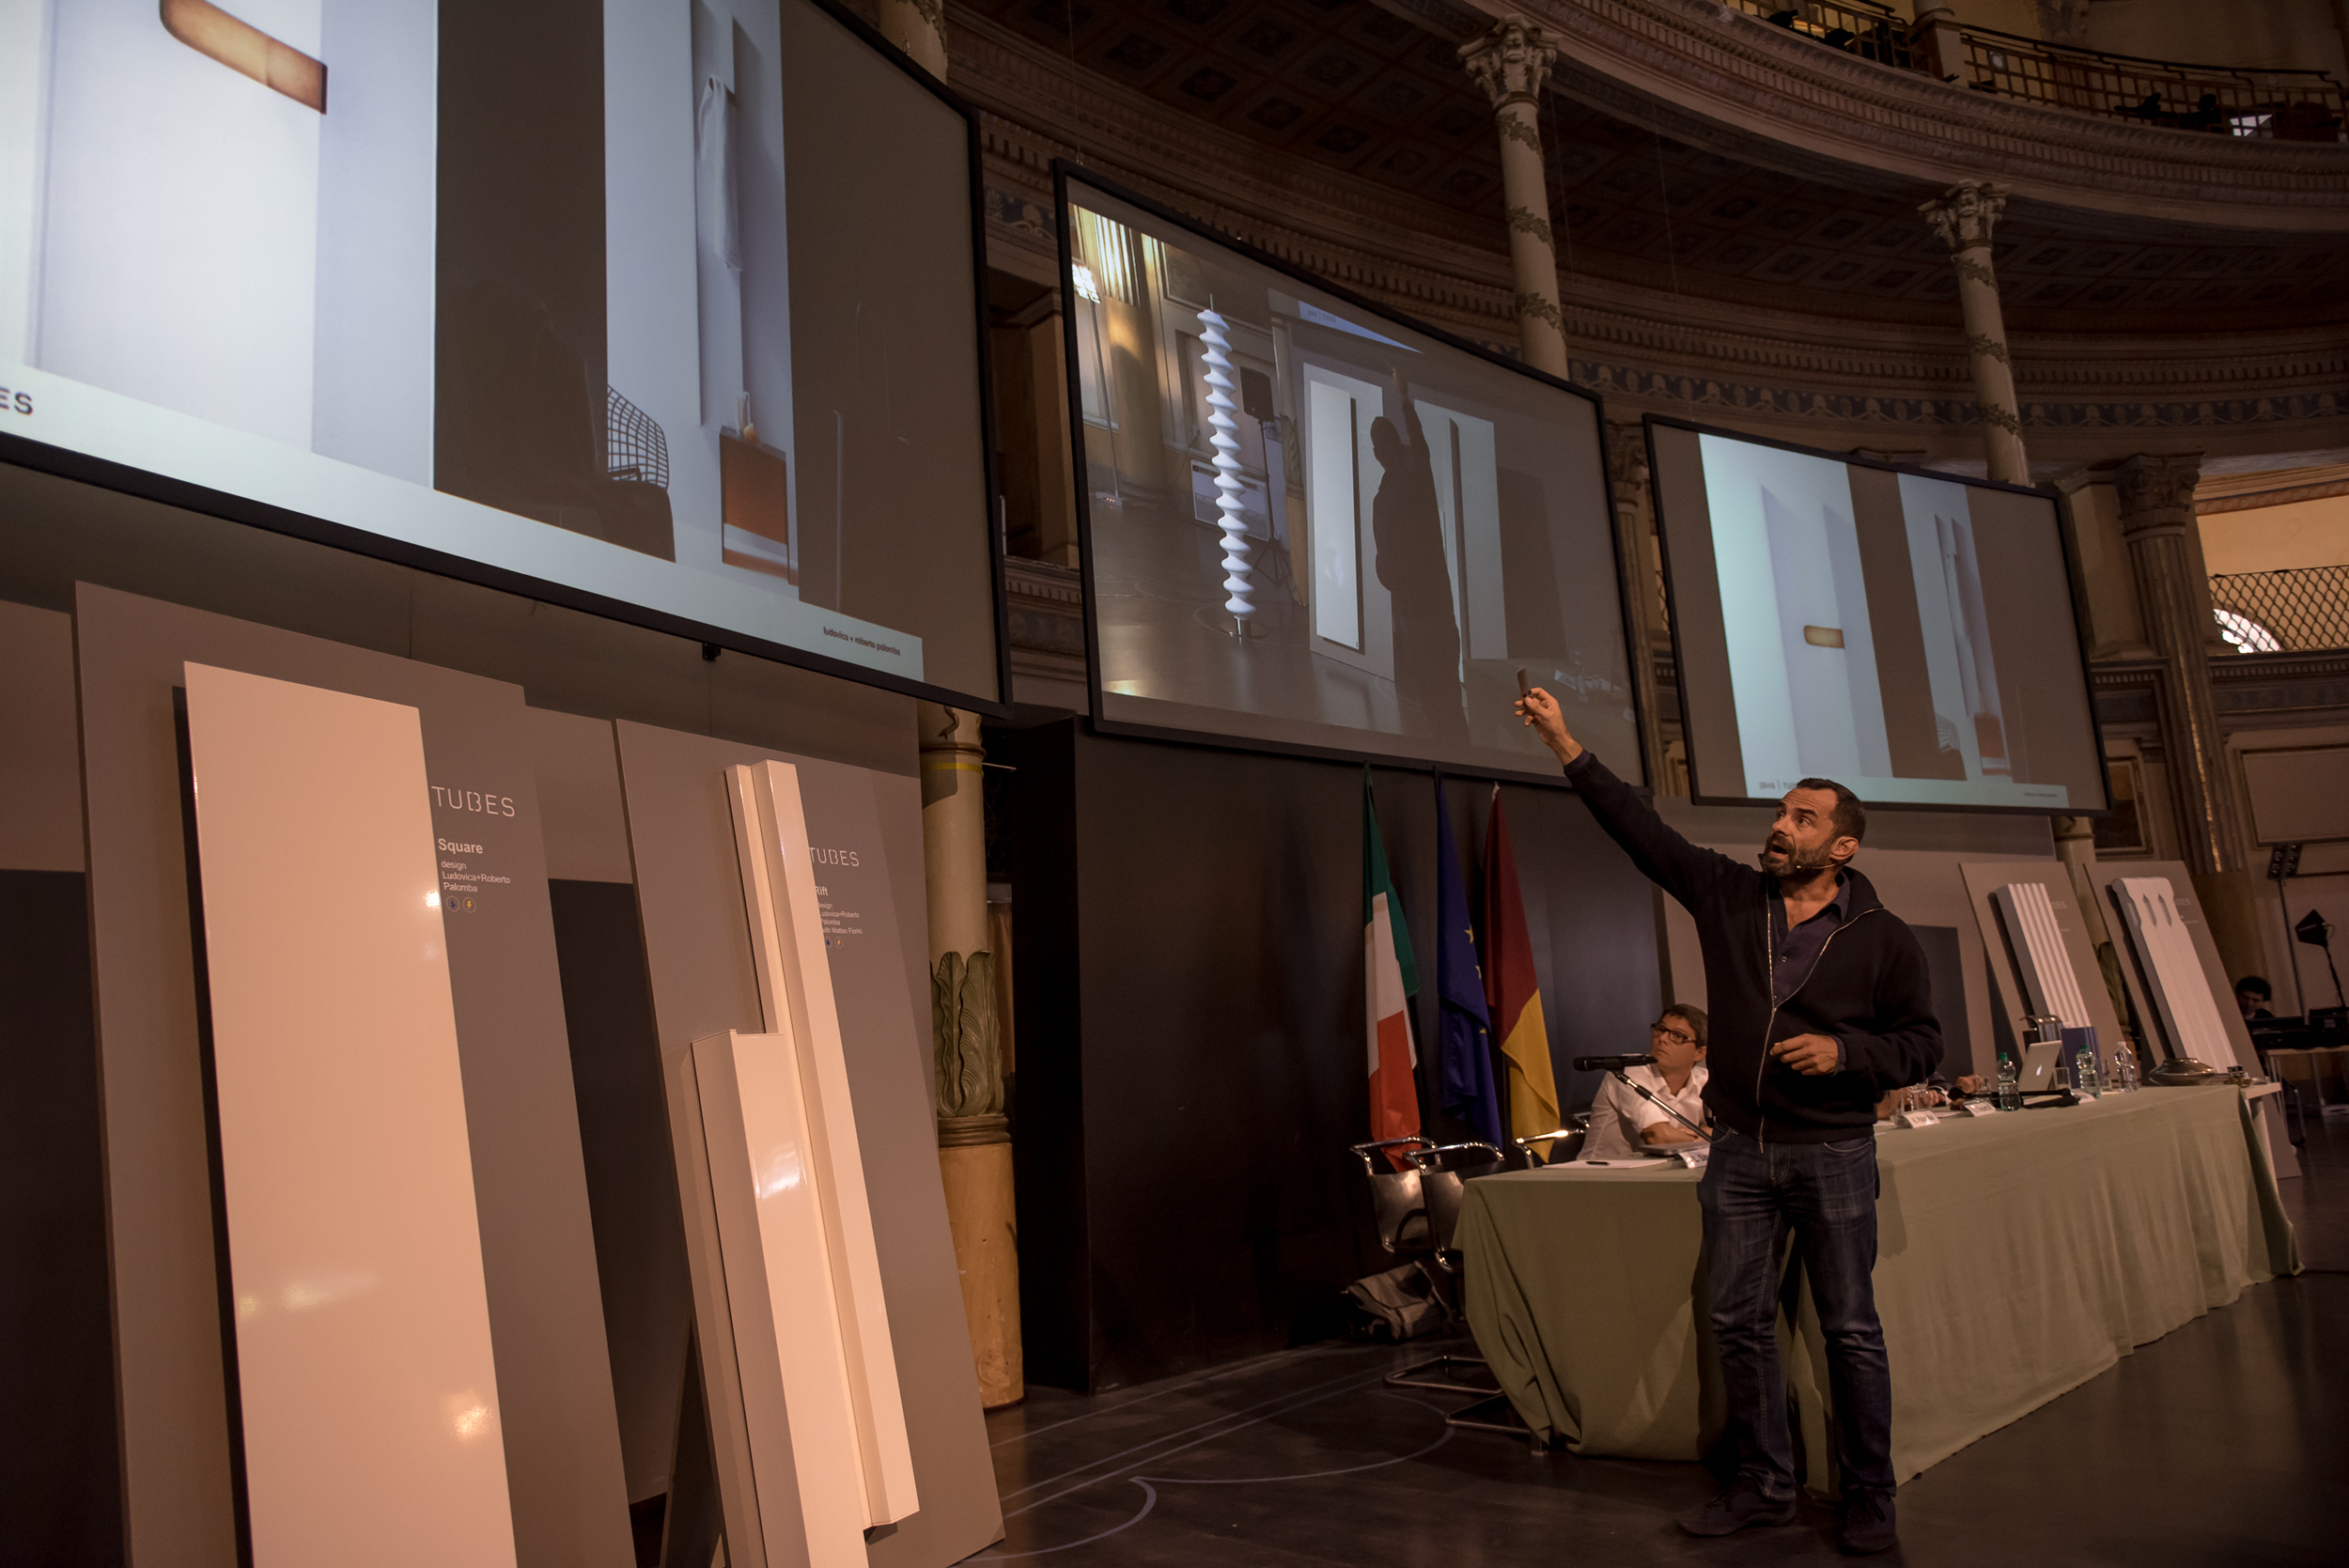 Workshop “Diseño, Sostenibilidad y Calor” en Roma-Evento Tubes - 10 Settembre 2015-8294